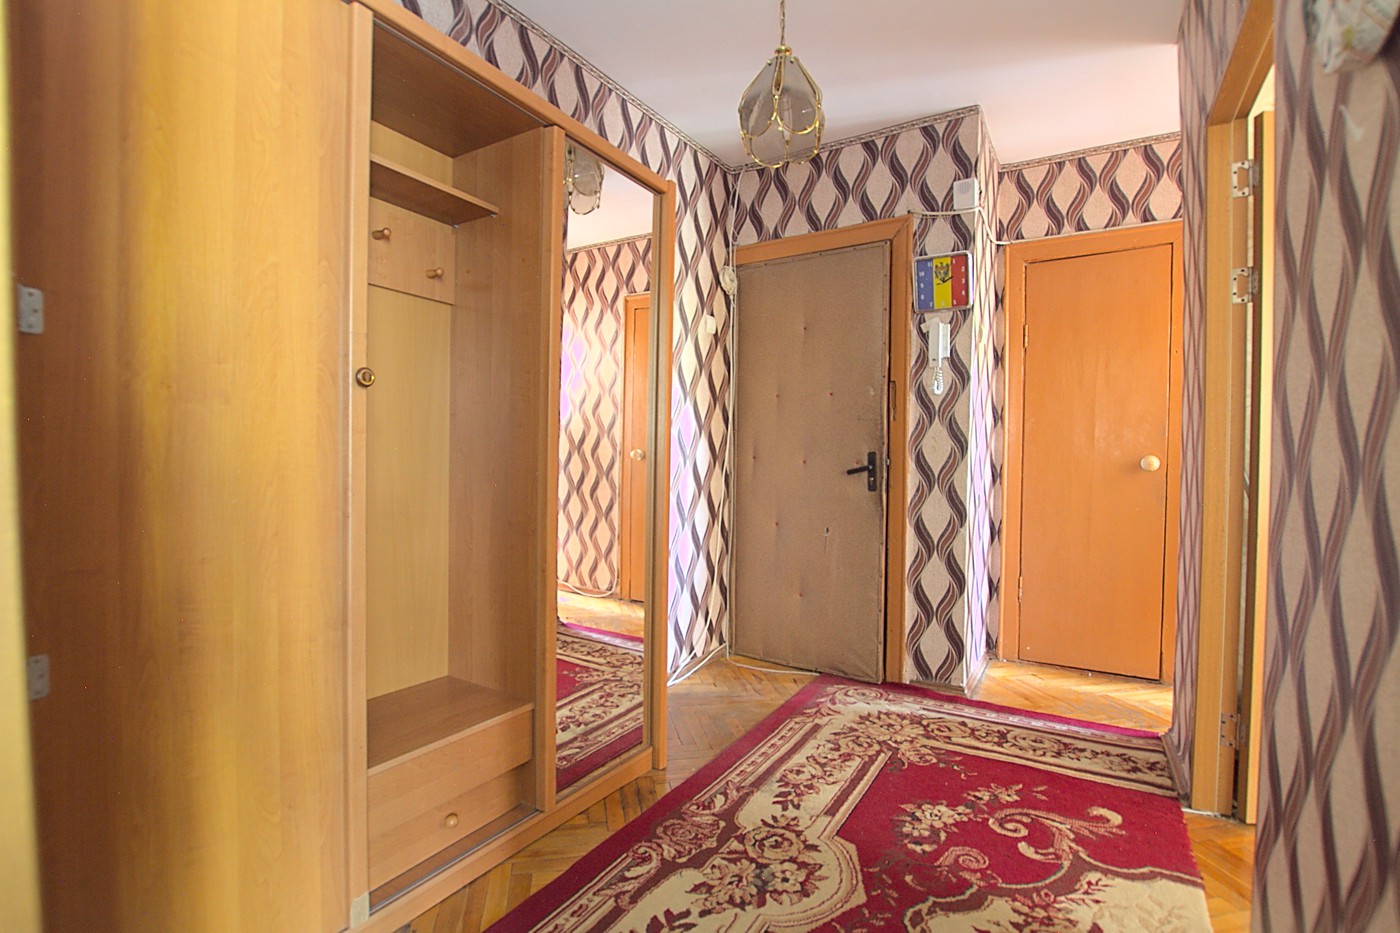 2 camere de inchiriat in Chisinau, bd. Moscovei 3/1